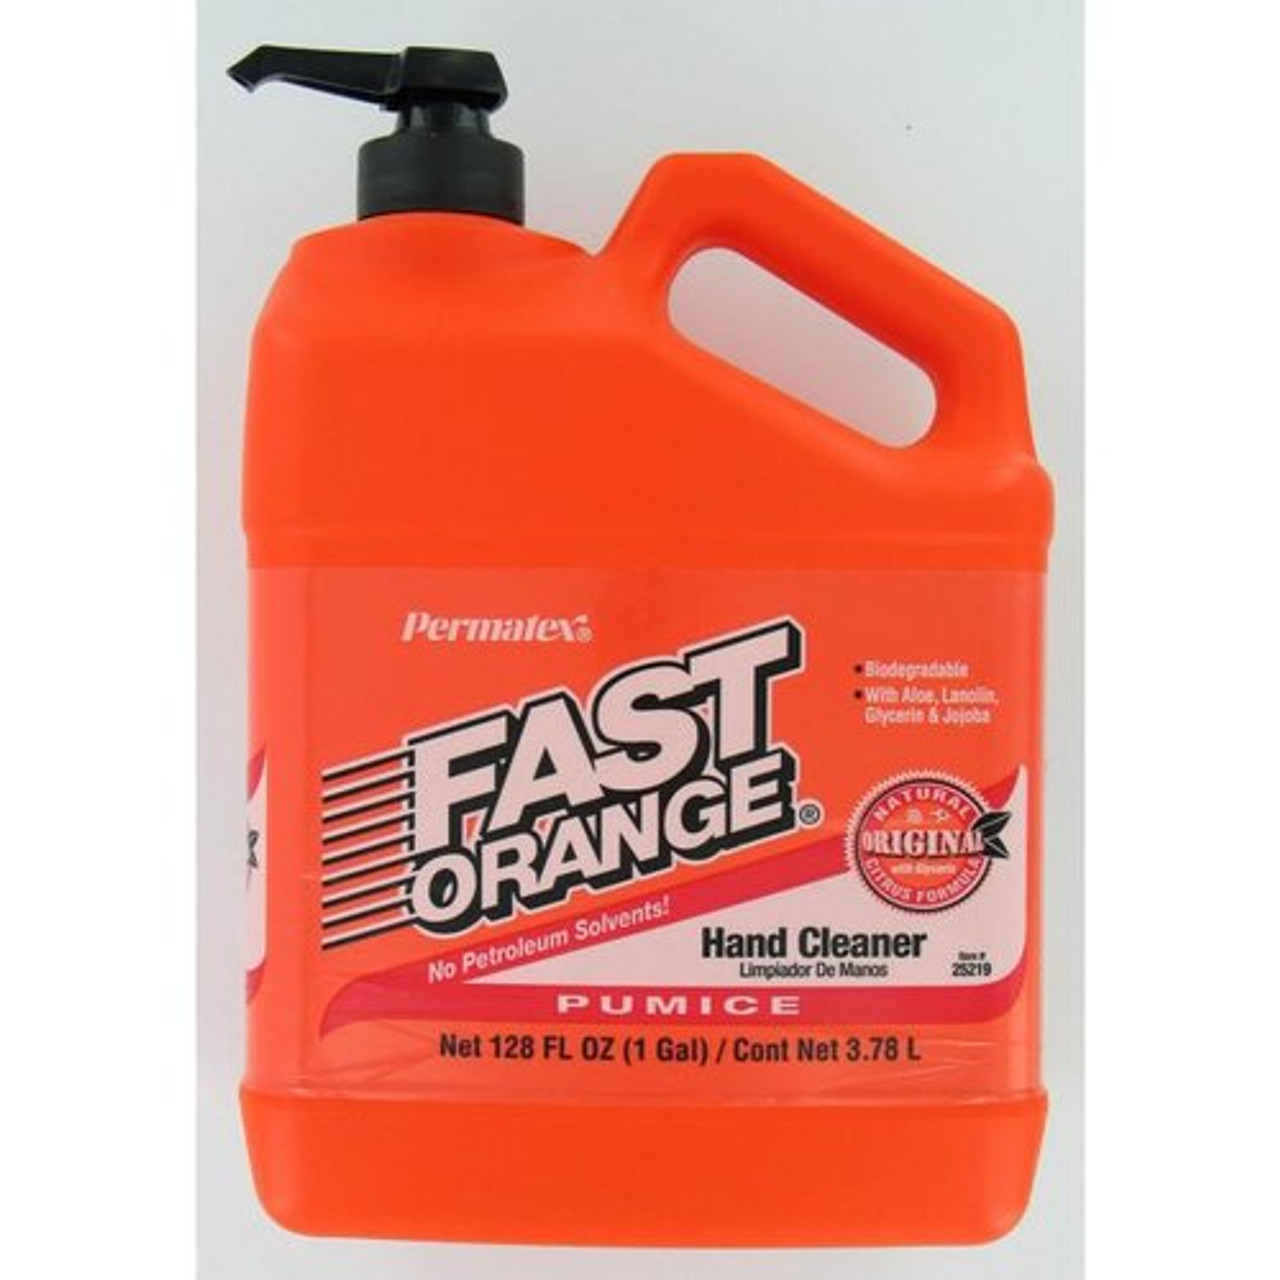 PERMATEX Fast Orange Pumice Citrus Hand Cleaner, 1 Gal